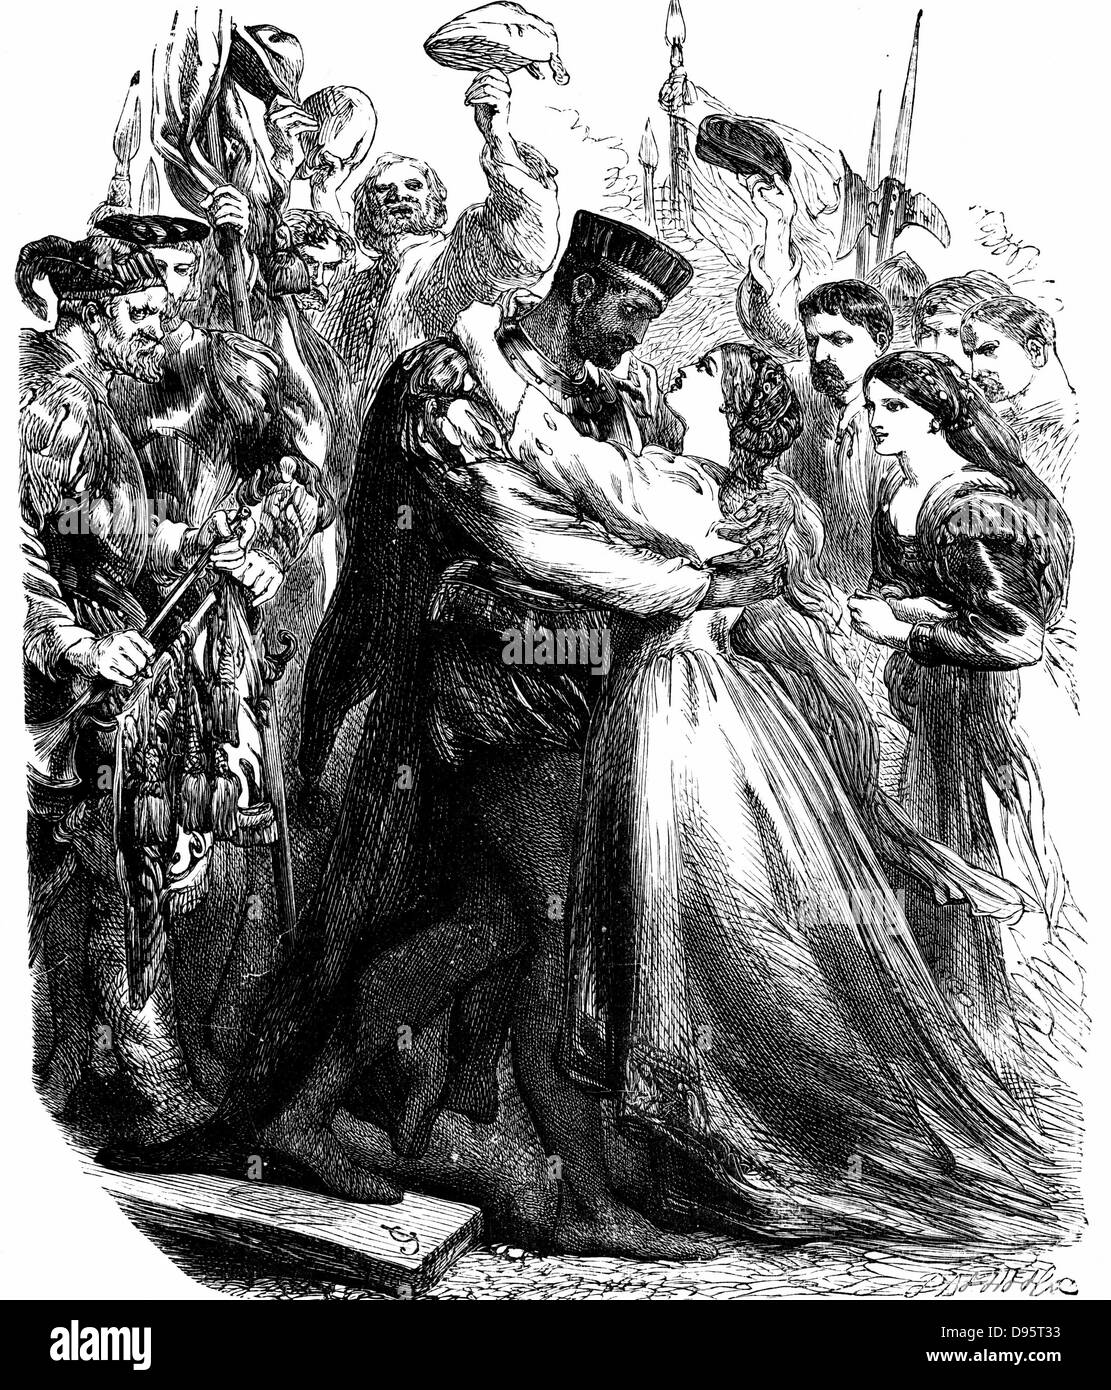 Shakespeare 'Othello' Act 2: Othello welcoming Desdemona to Cyprus. 19th century engraving. Stock Photo